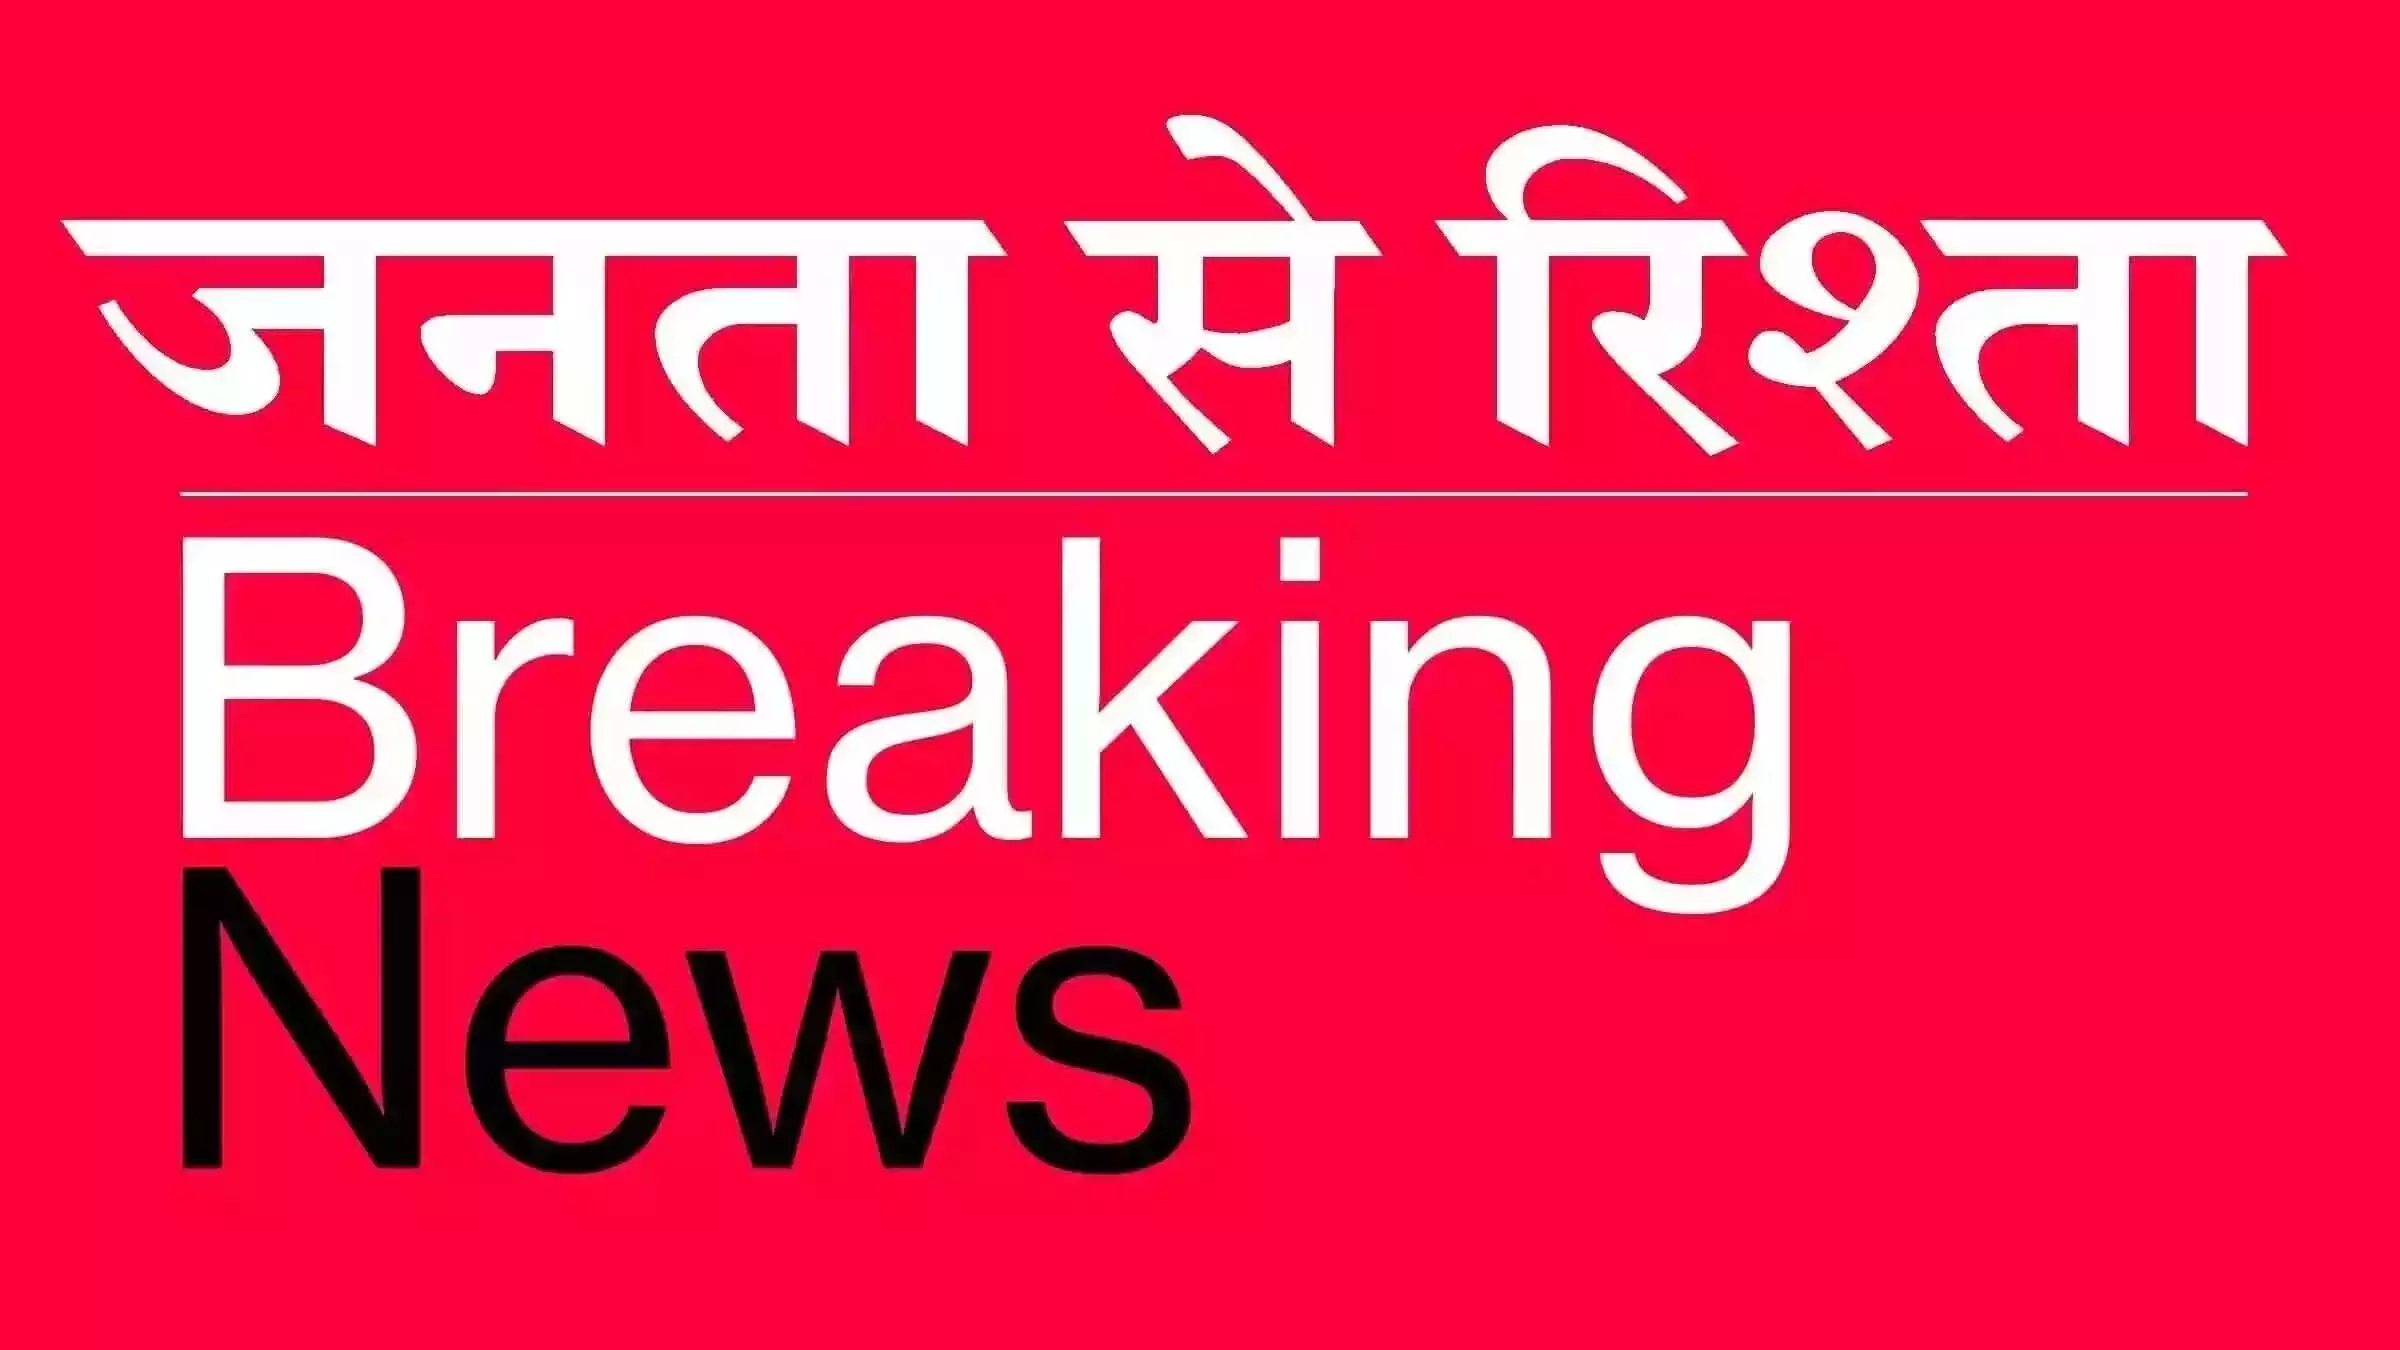 Bihar: बिहार कैबिनेट की बैठक में 27 प्रस्तावों को मंजूरी, खेल प्राधिकरण में विभिन्न कोटि के सृजित होंगे 301 पद